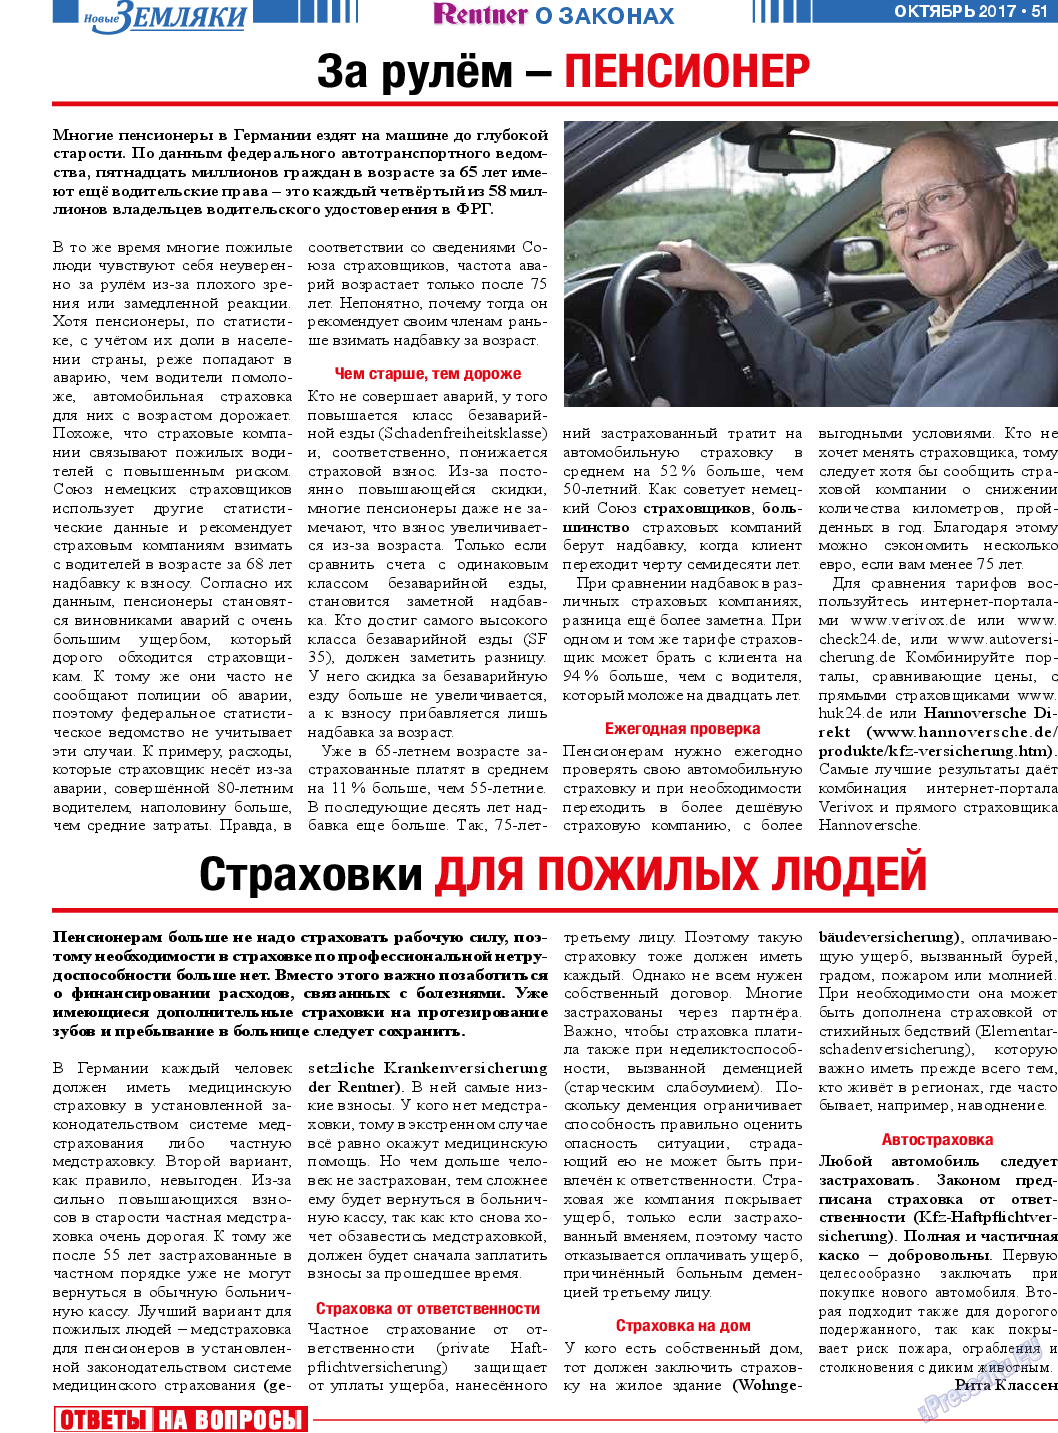 Новые Земляки, газета. 2017 №10 стр.51